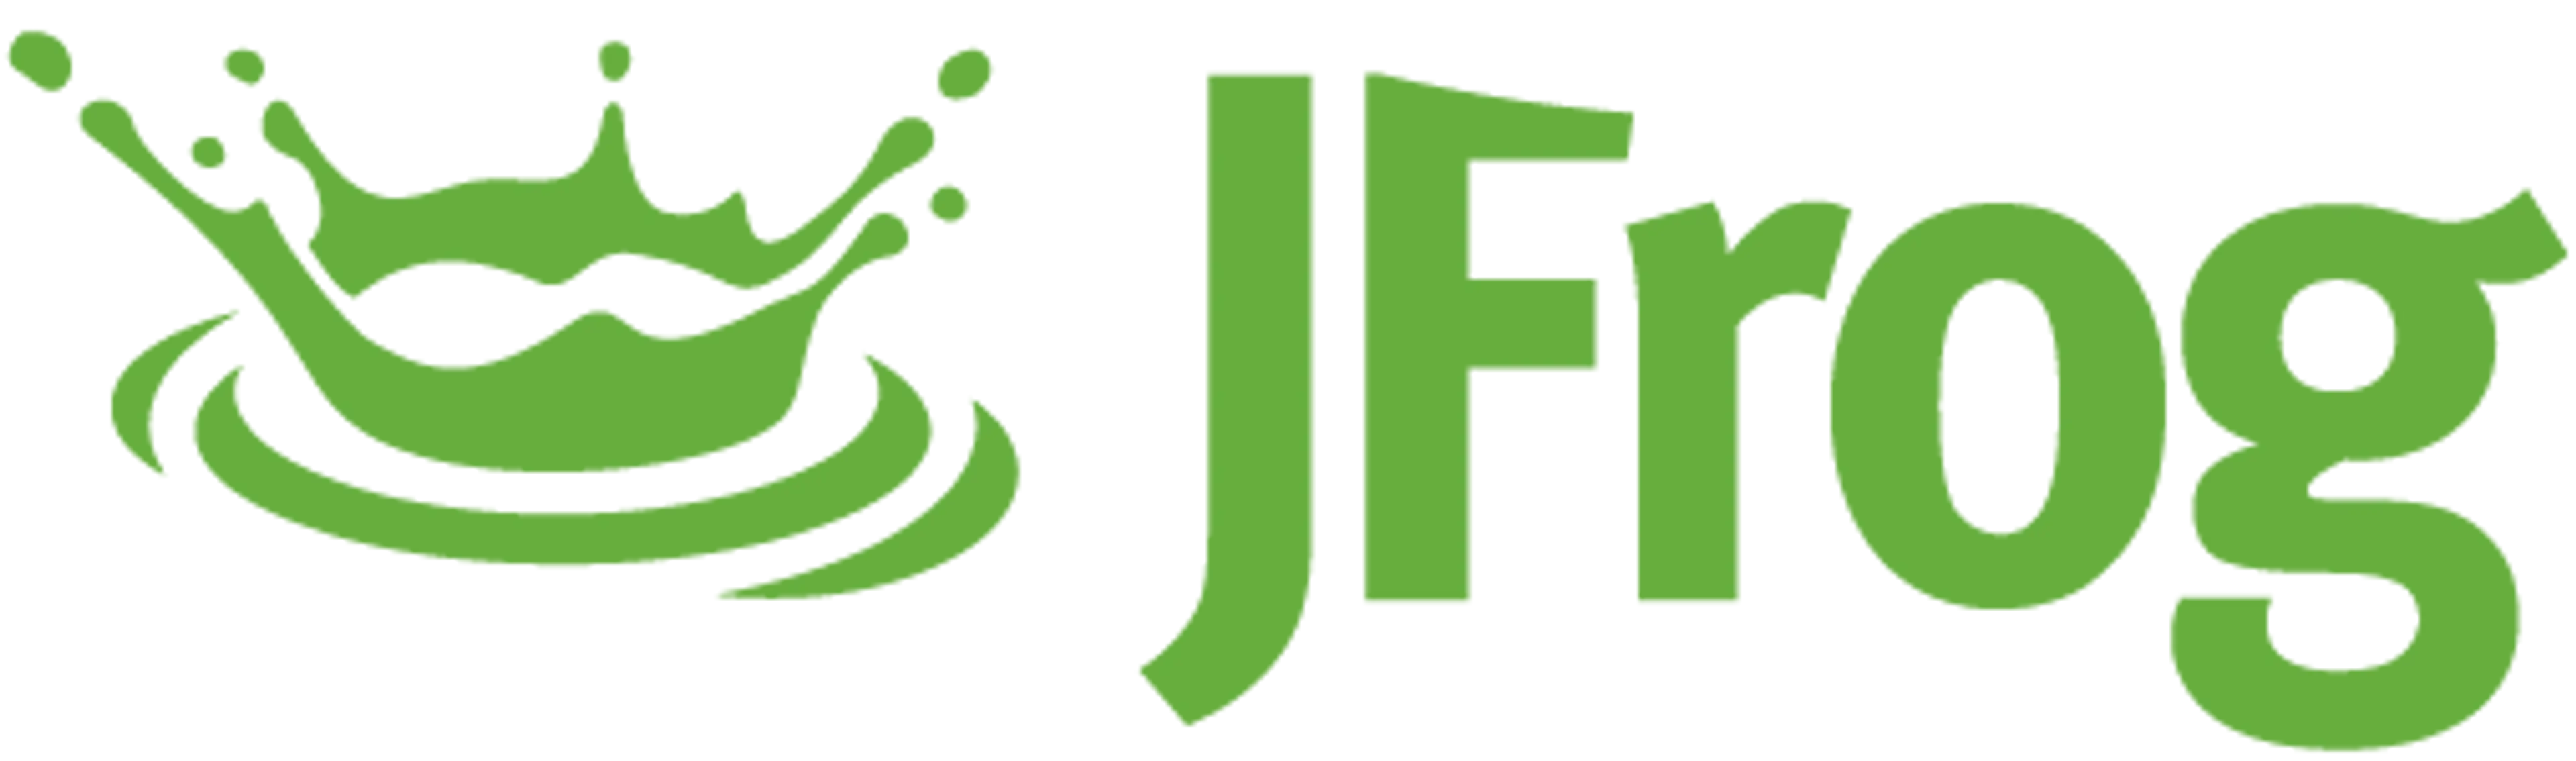 Jfrog vendor logo